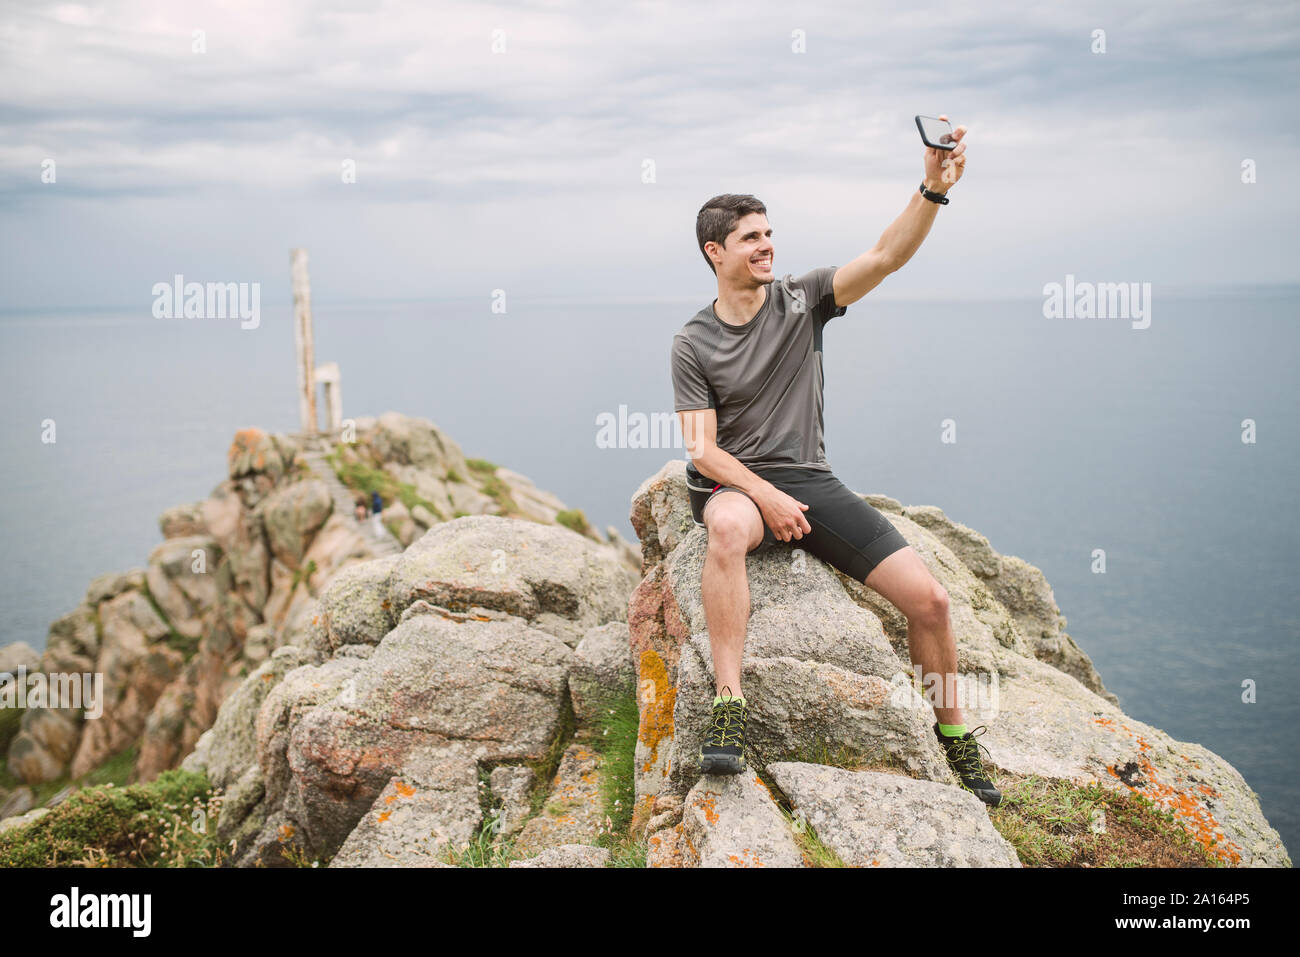 Trail runner sitting on a rock in coastal landscape taking a selfie, Ferrol, Spain Stock Photo